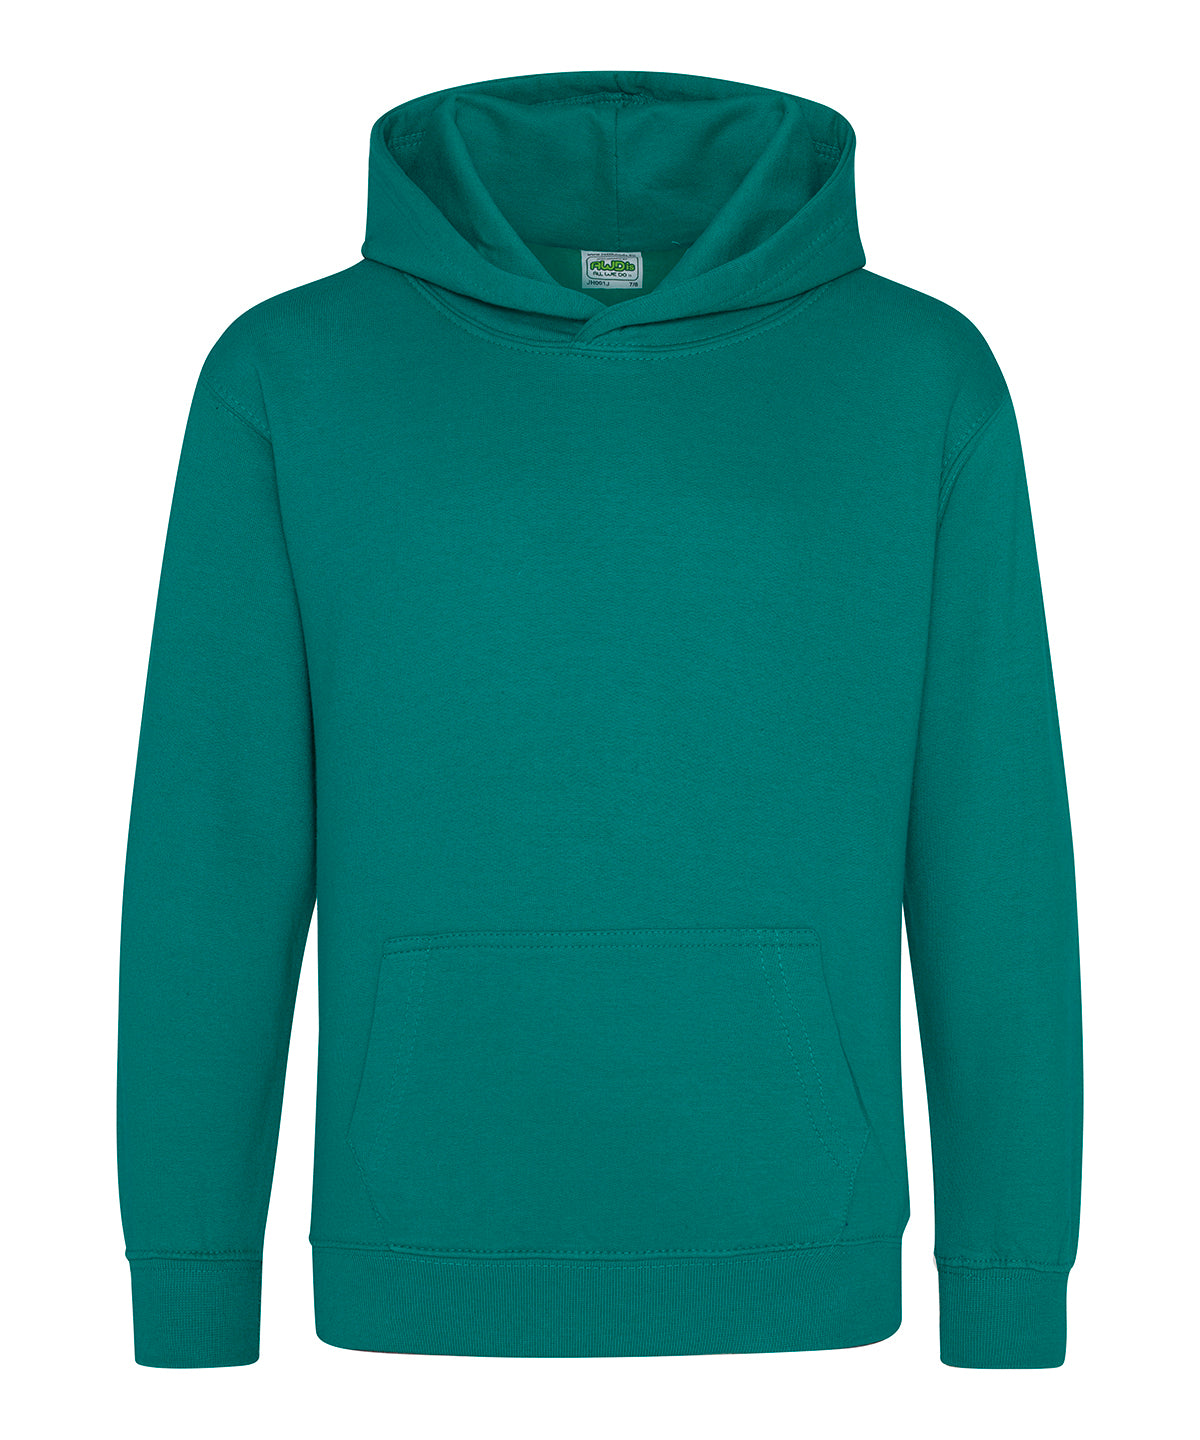 Personalised Hoodies - Turquoise AWDis Just Hoods Kids hoodie